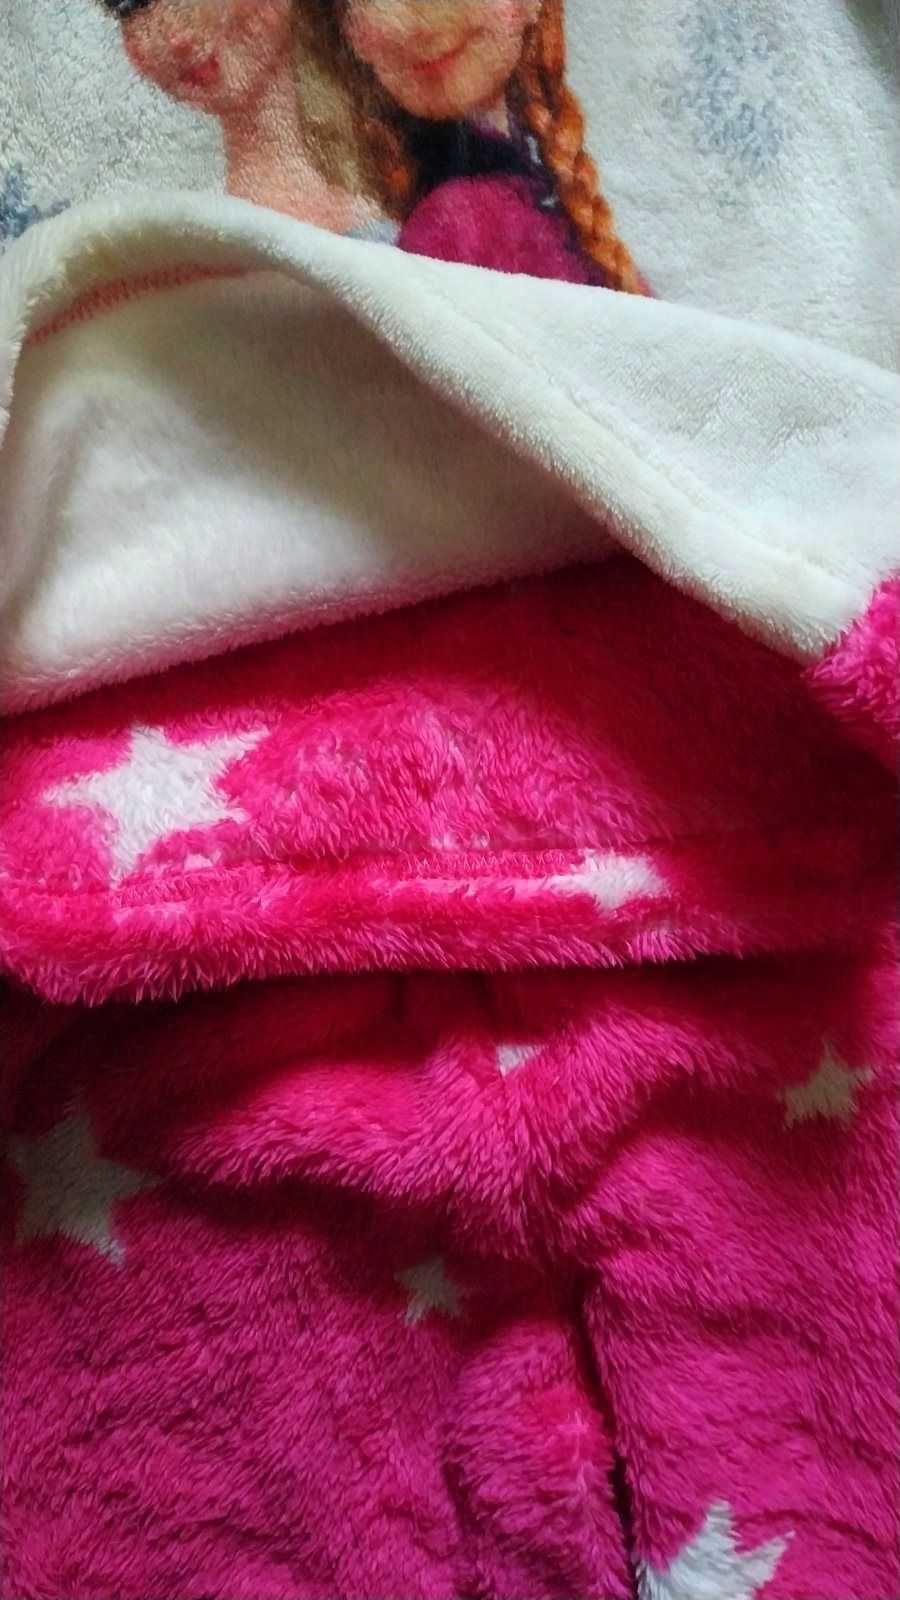 Махровая пижама с Анной и Эльзой, Холодное сердце на 5-6 лет